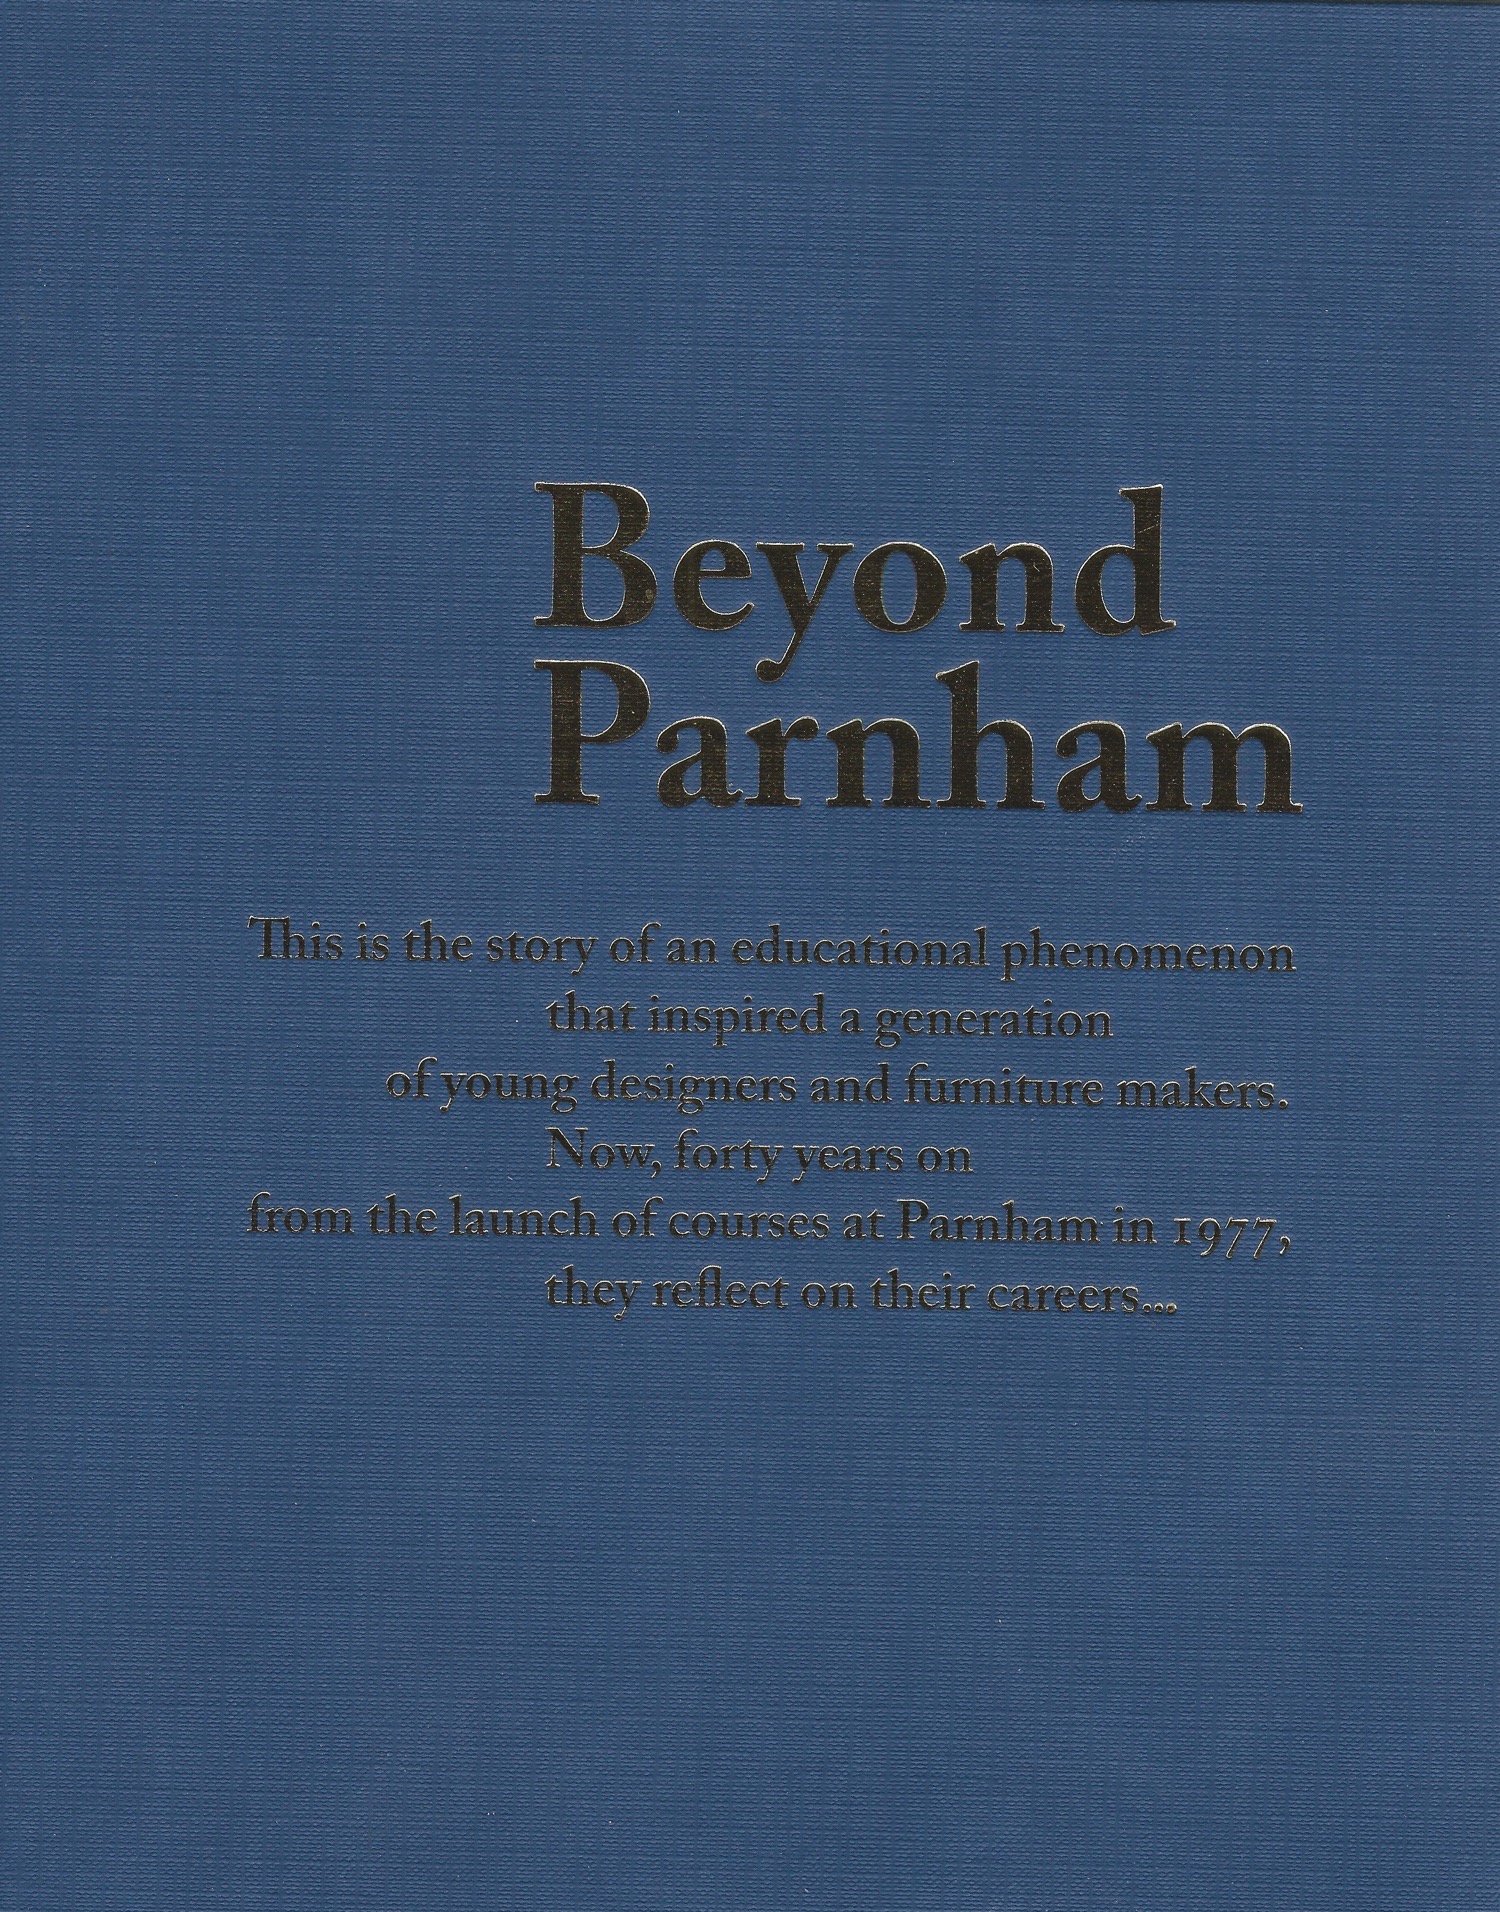 beypond parnham cover.jpg